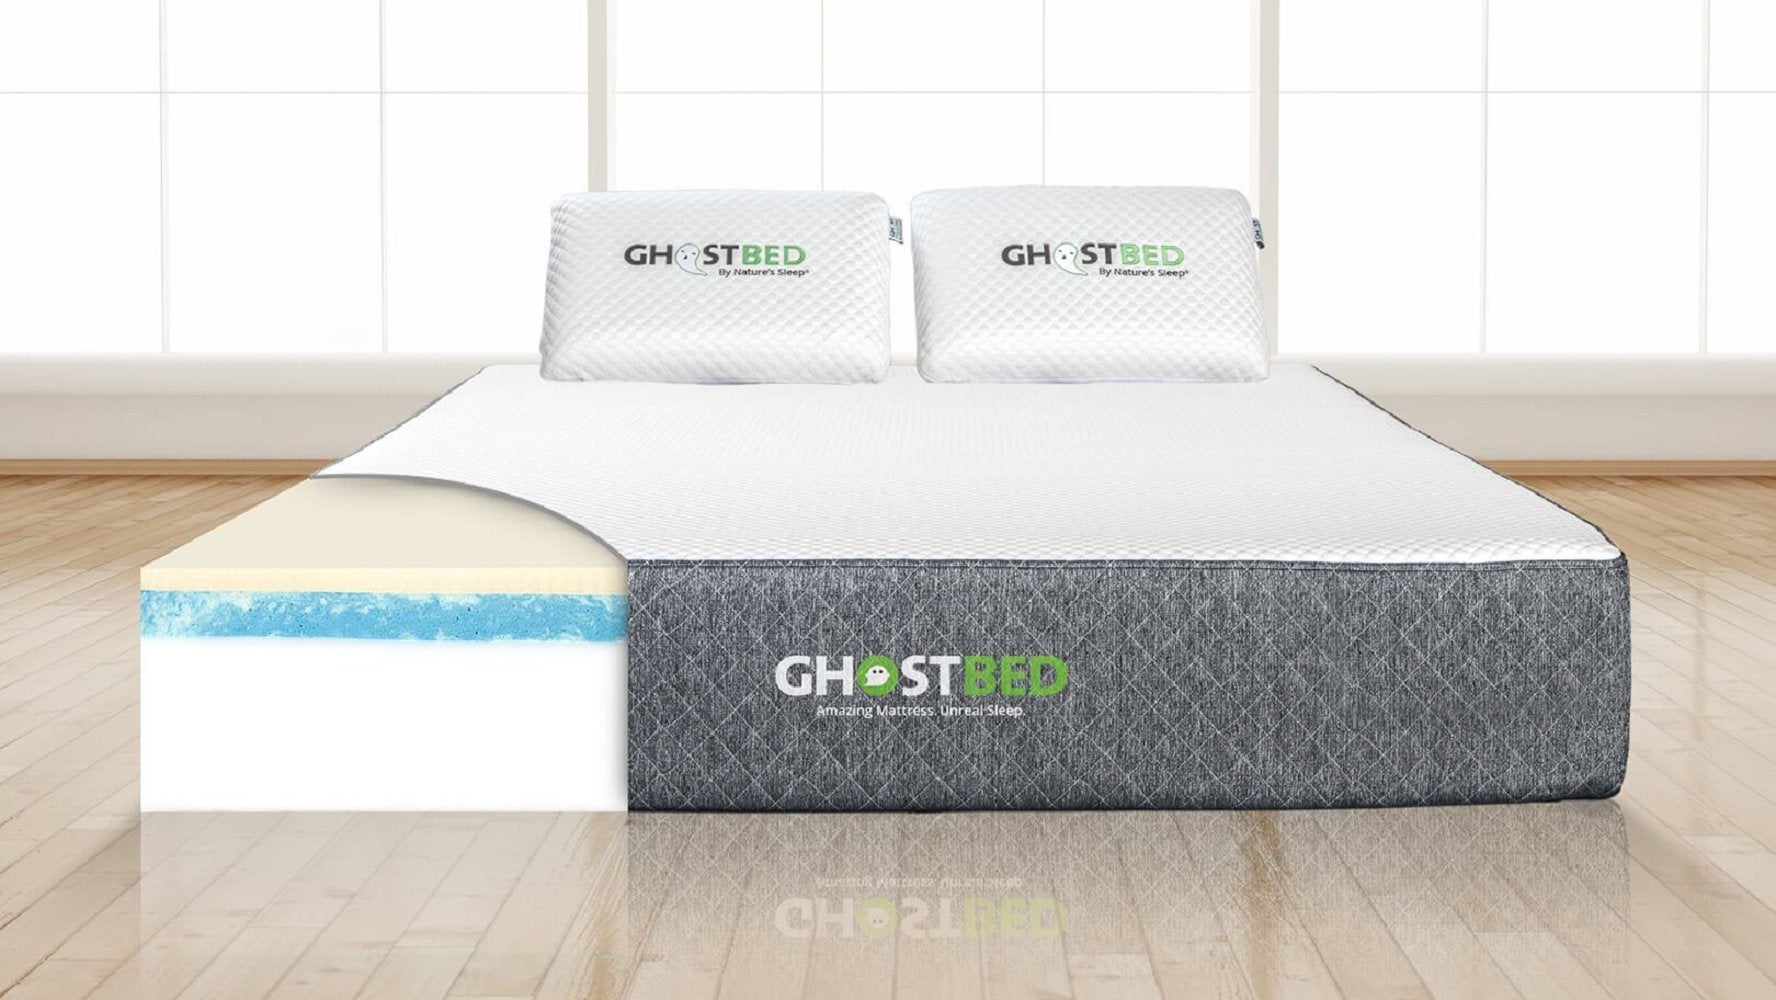 ghostbed mattress gel memory foam mattress reviews